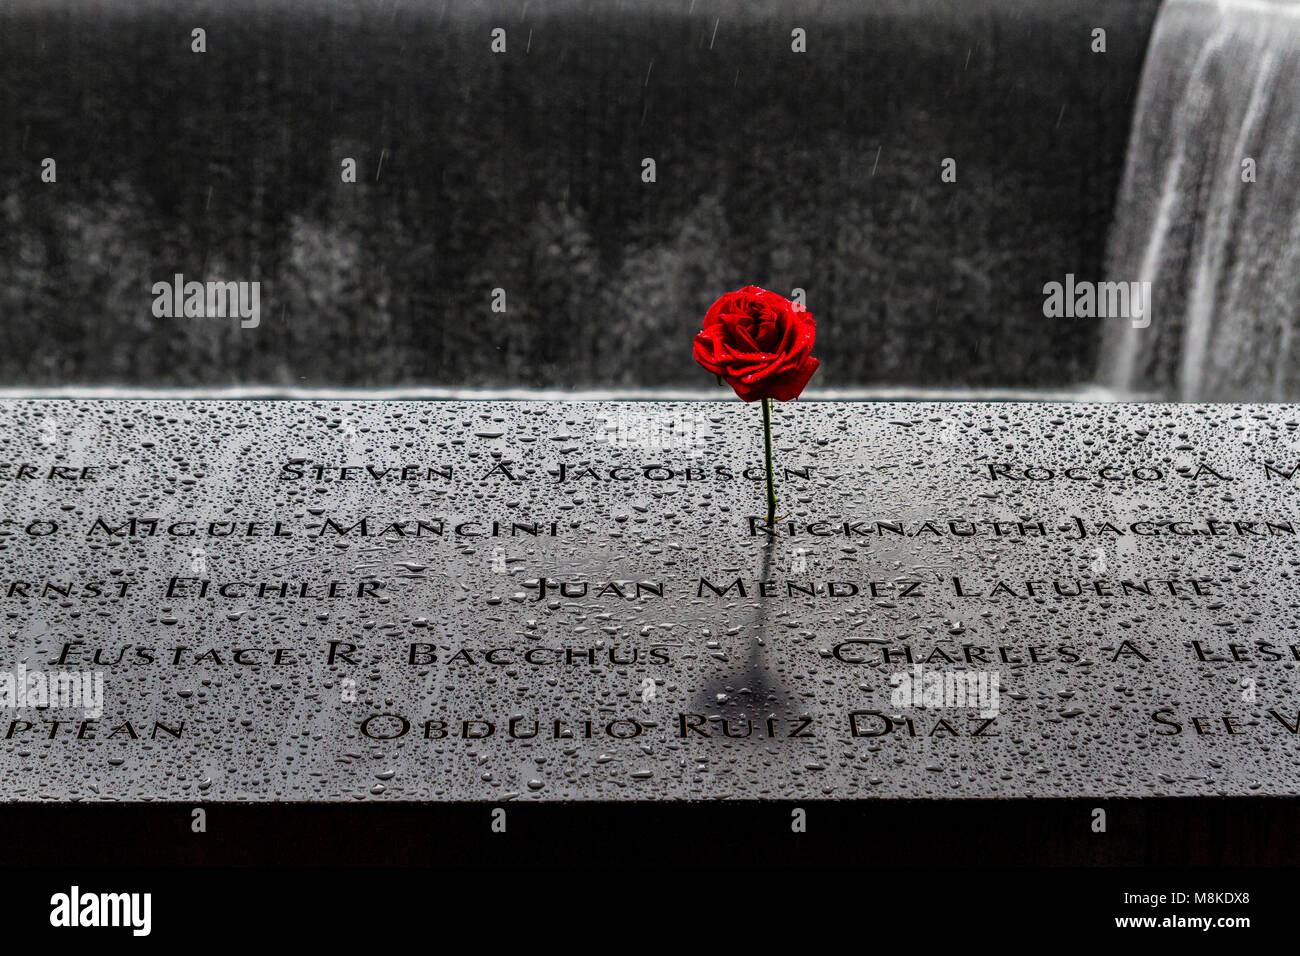 Una rosa roja colocada en una piscina conmemorativa que está grabada con los nombres de los muertos por el ataque a las Torres Gemelas el 11,2001 de septiembre, Nueva York Foto de stock